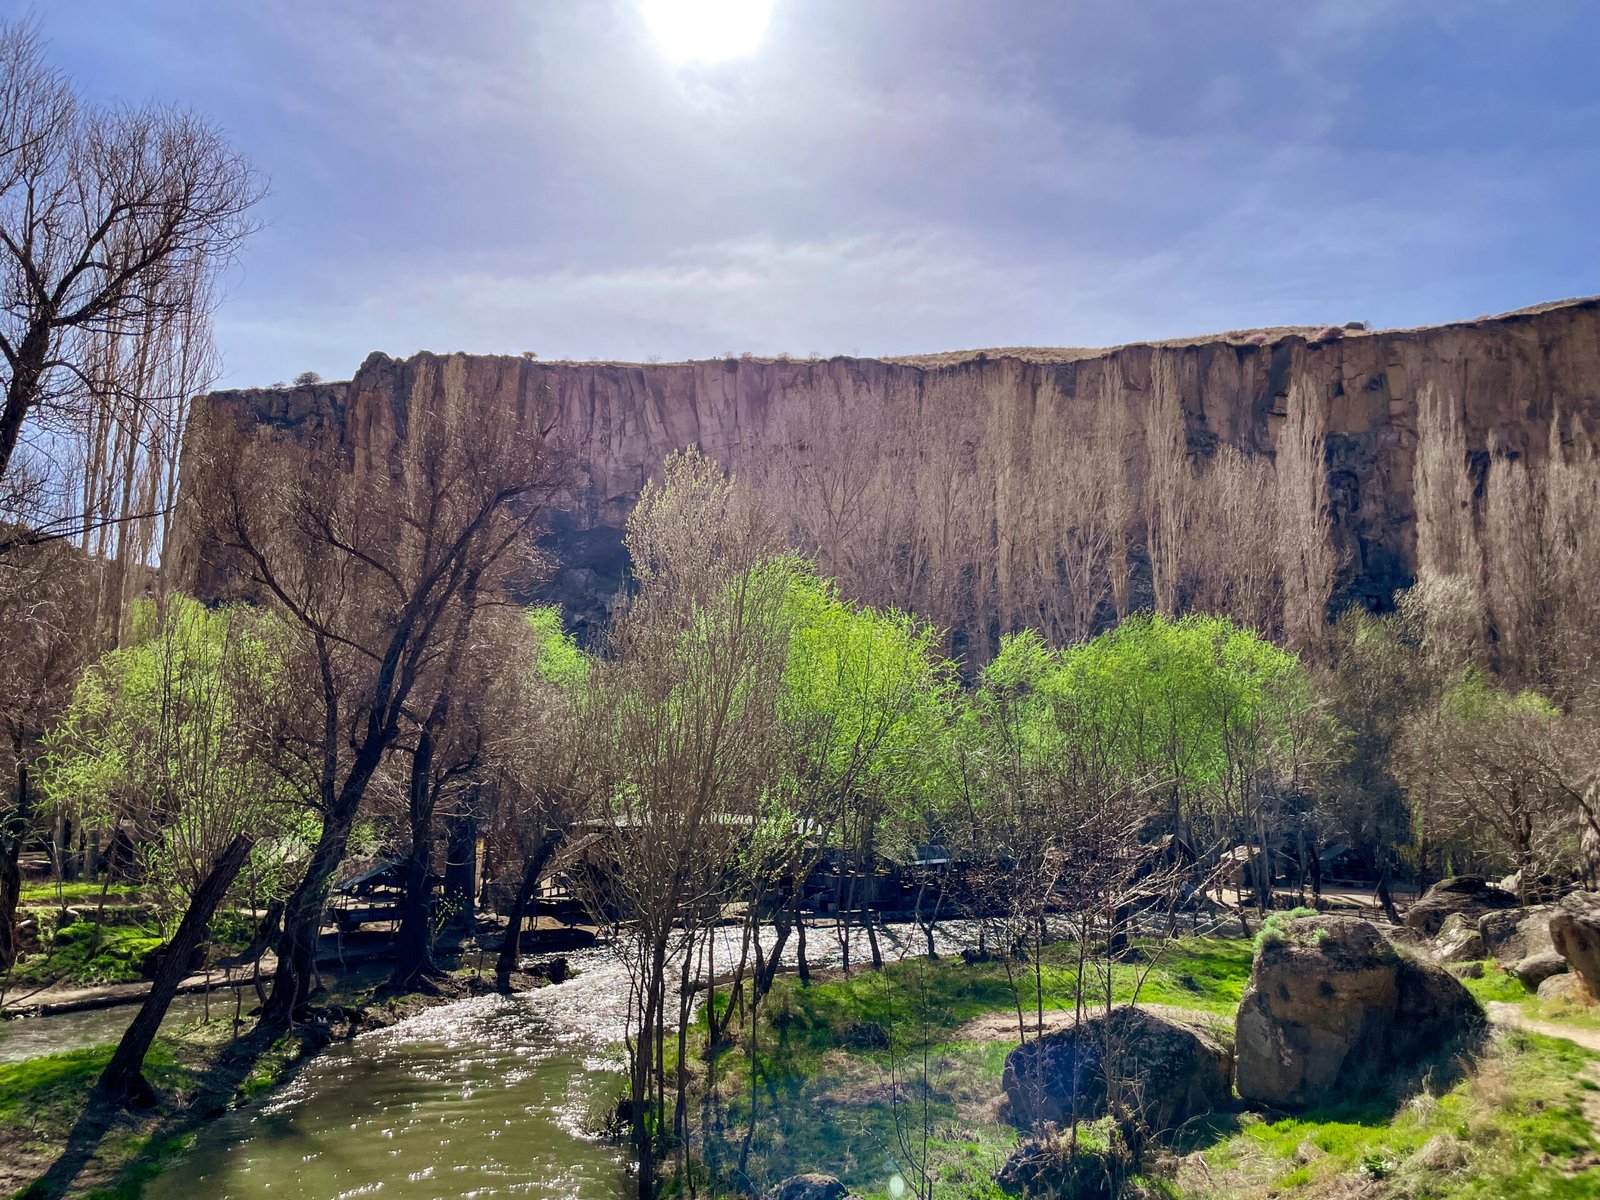 Ihlara valley guide - cappadociatouristinformation